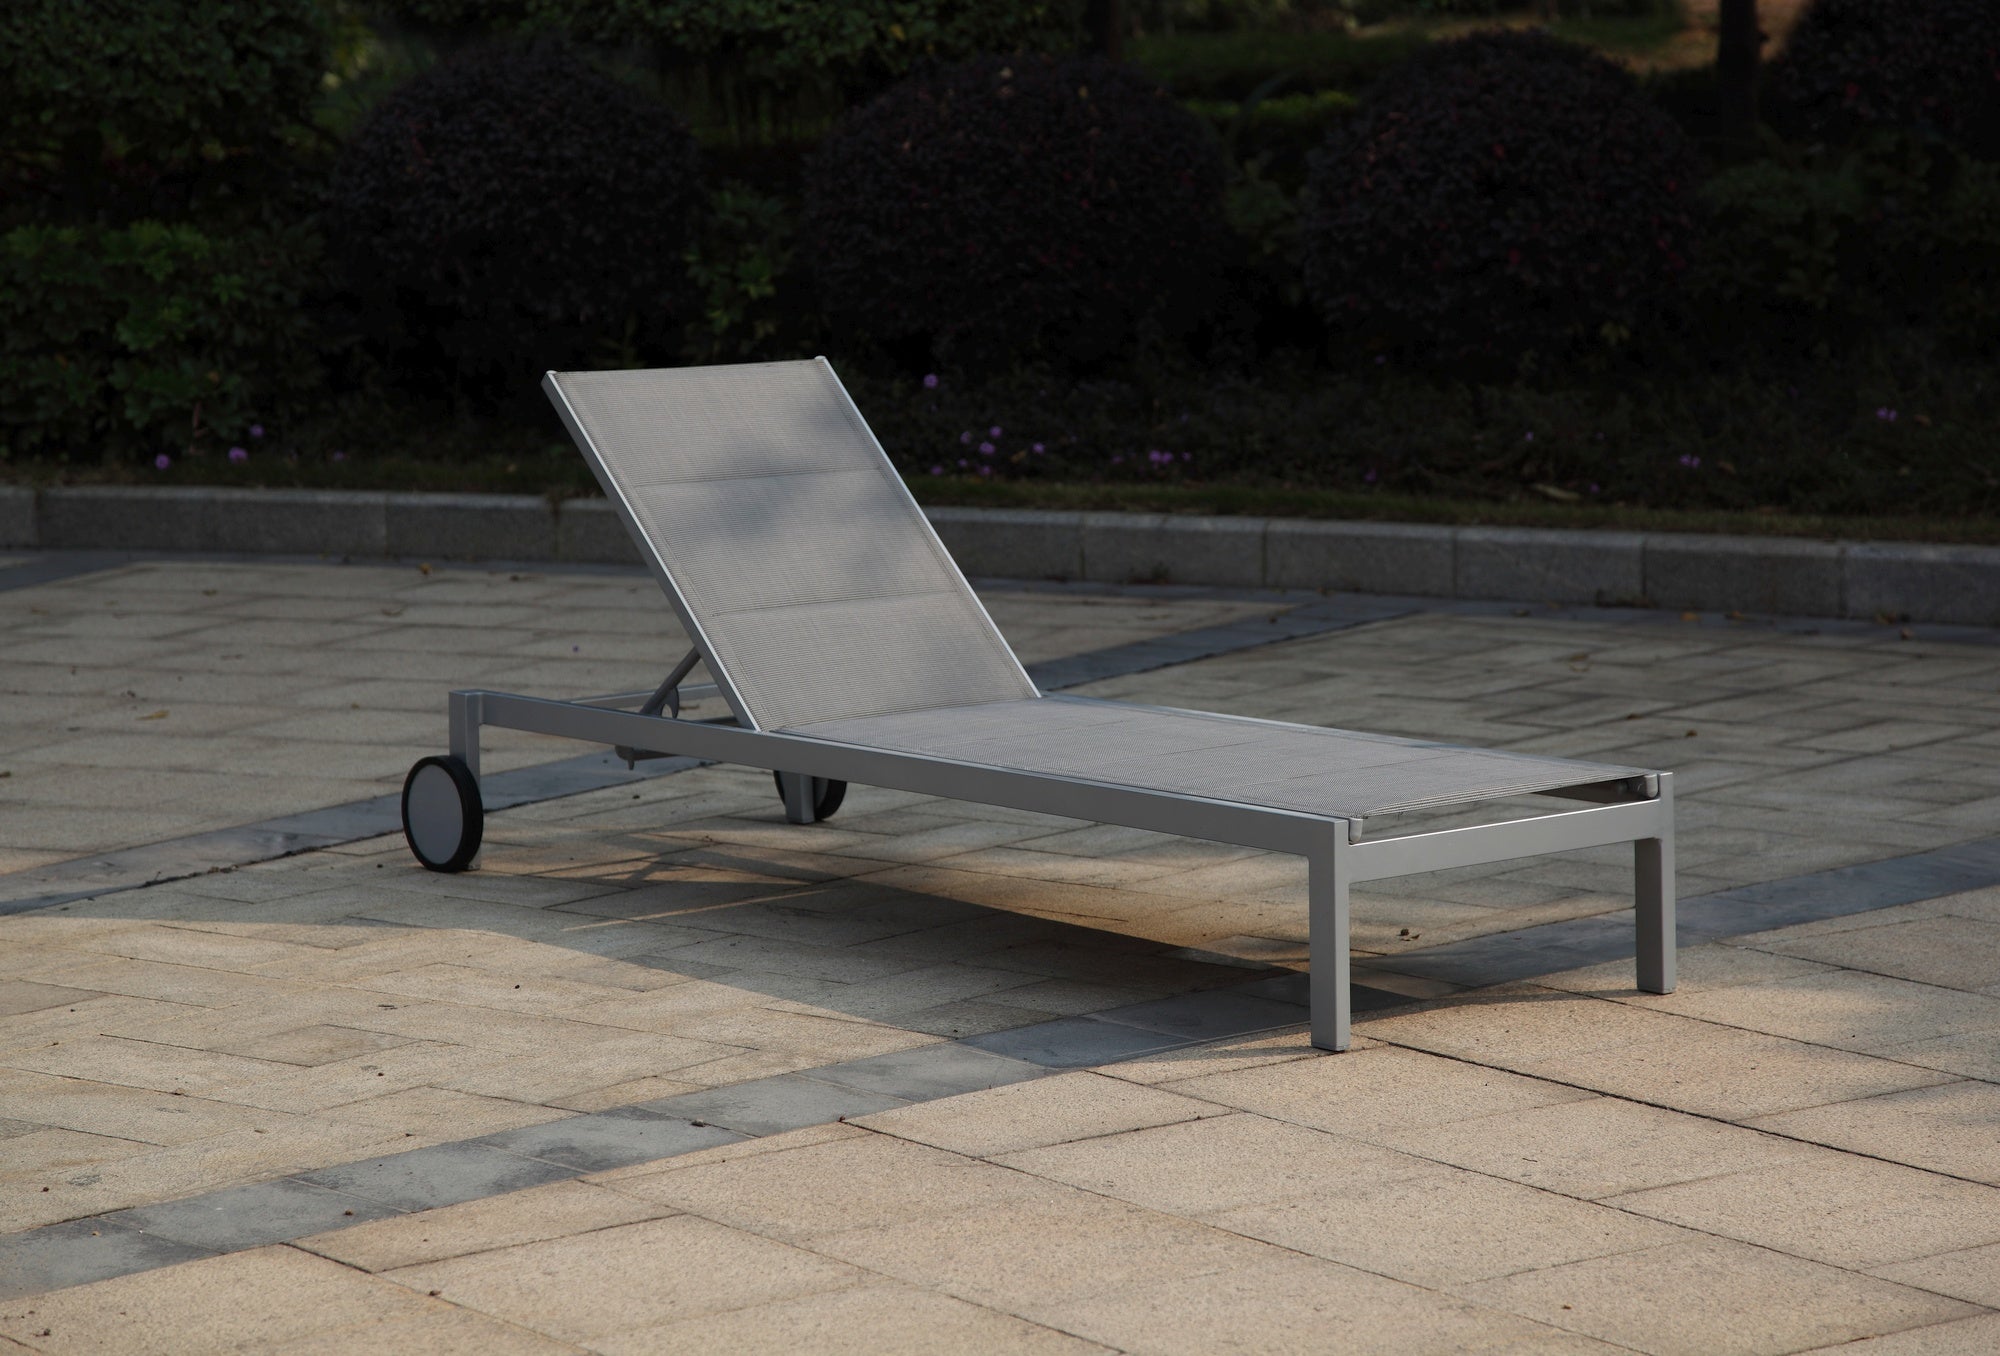 Praktische und stapelbare Sonnenliege Timea mit grauem Aluminiumgestell und Rädern, verstellbare Rückenlehne, erhältlich bei Gartenmöbelshop.at.